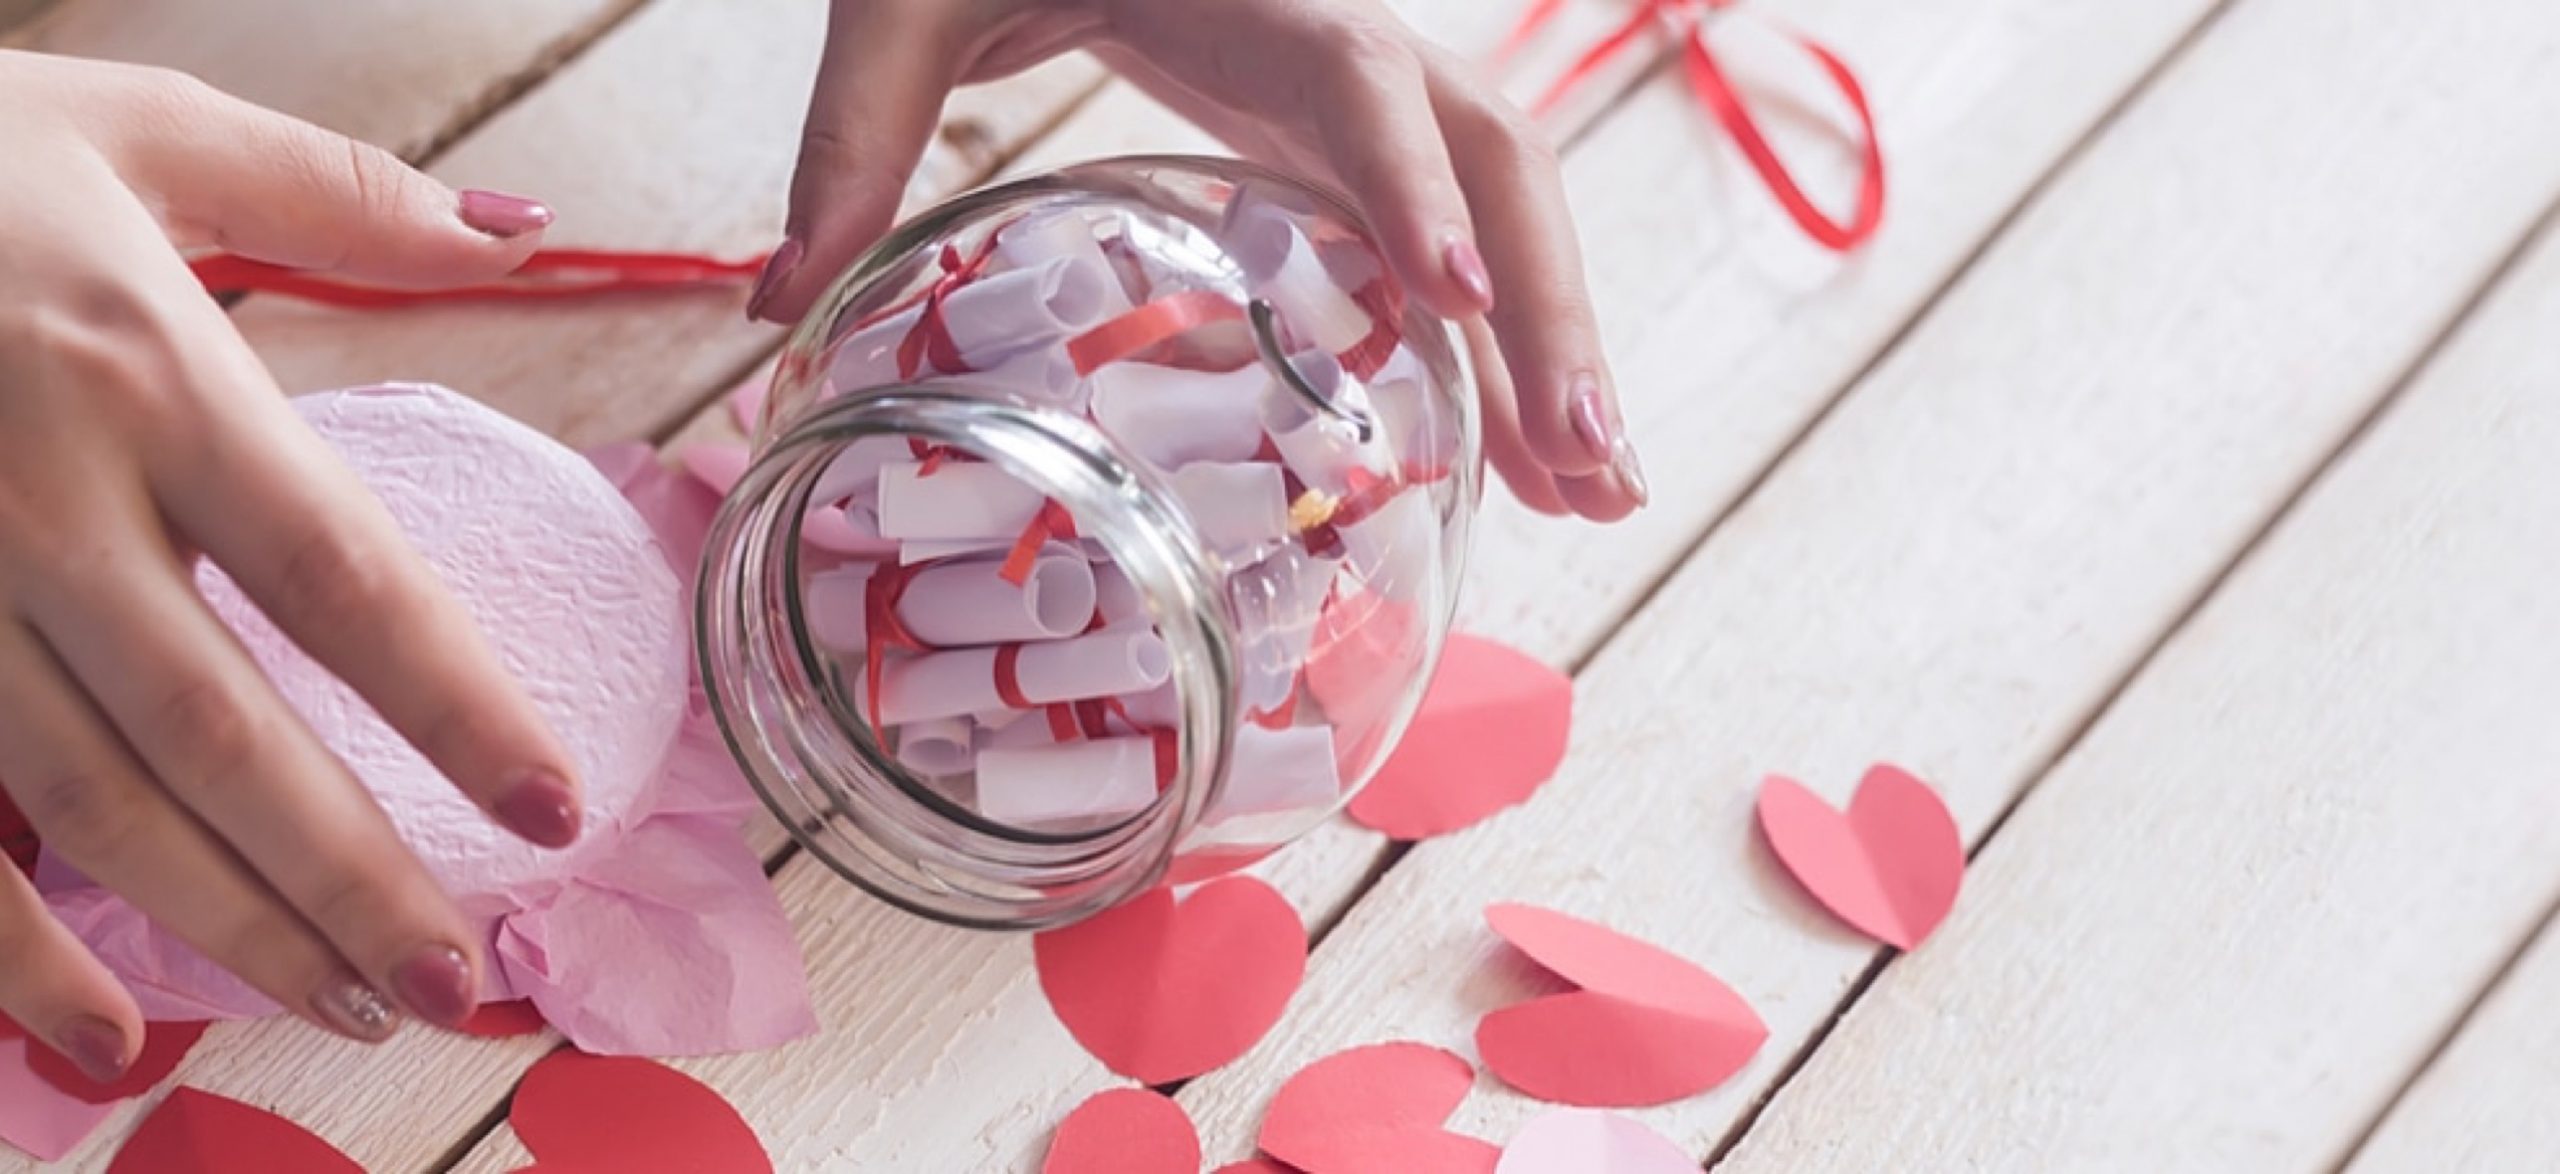 Qué regalar a mi pareja para San Valentín: 15 ideas románticas y originales